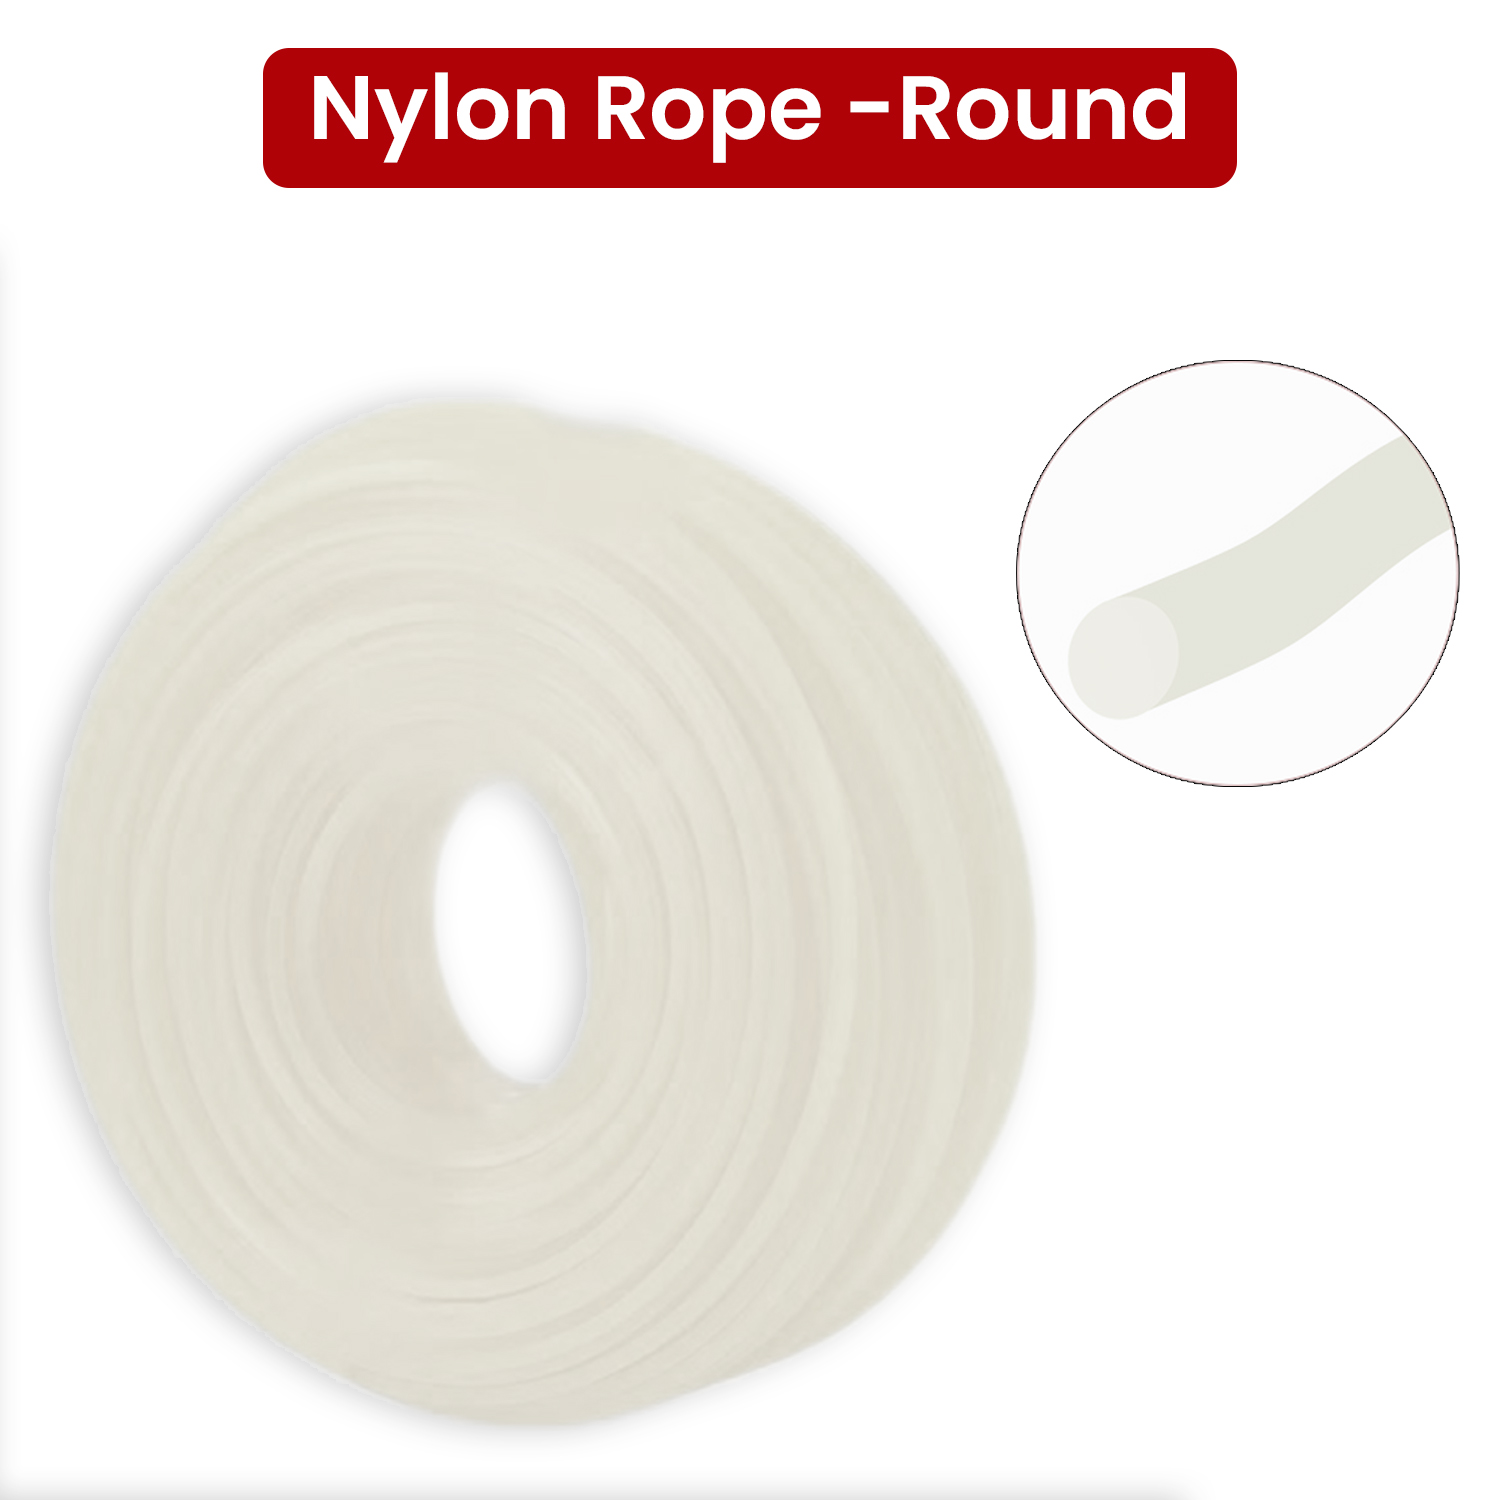 Balwaan Nylon Rope 3mm 50 Mtr- Round (White)